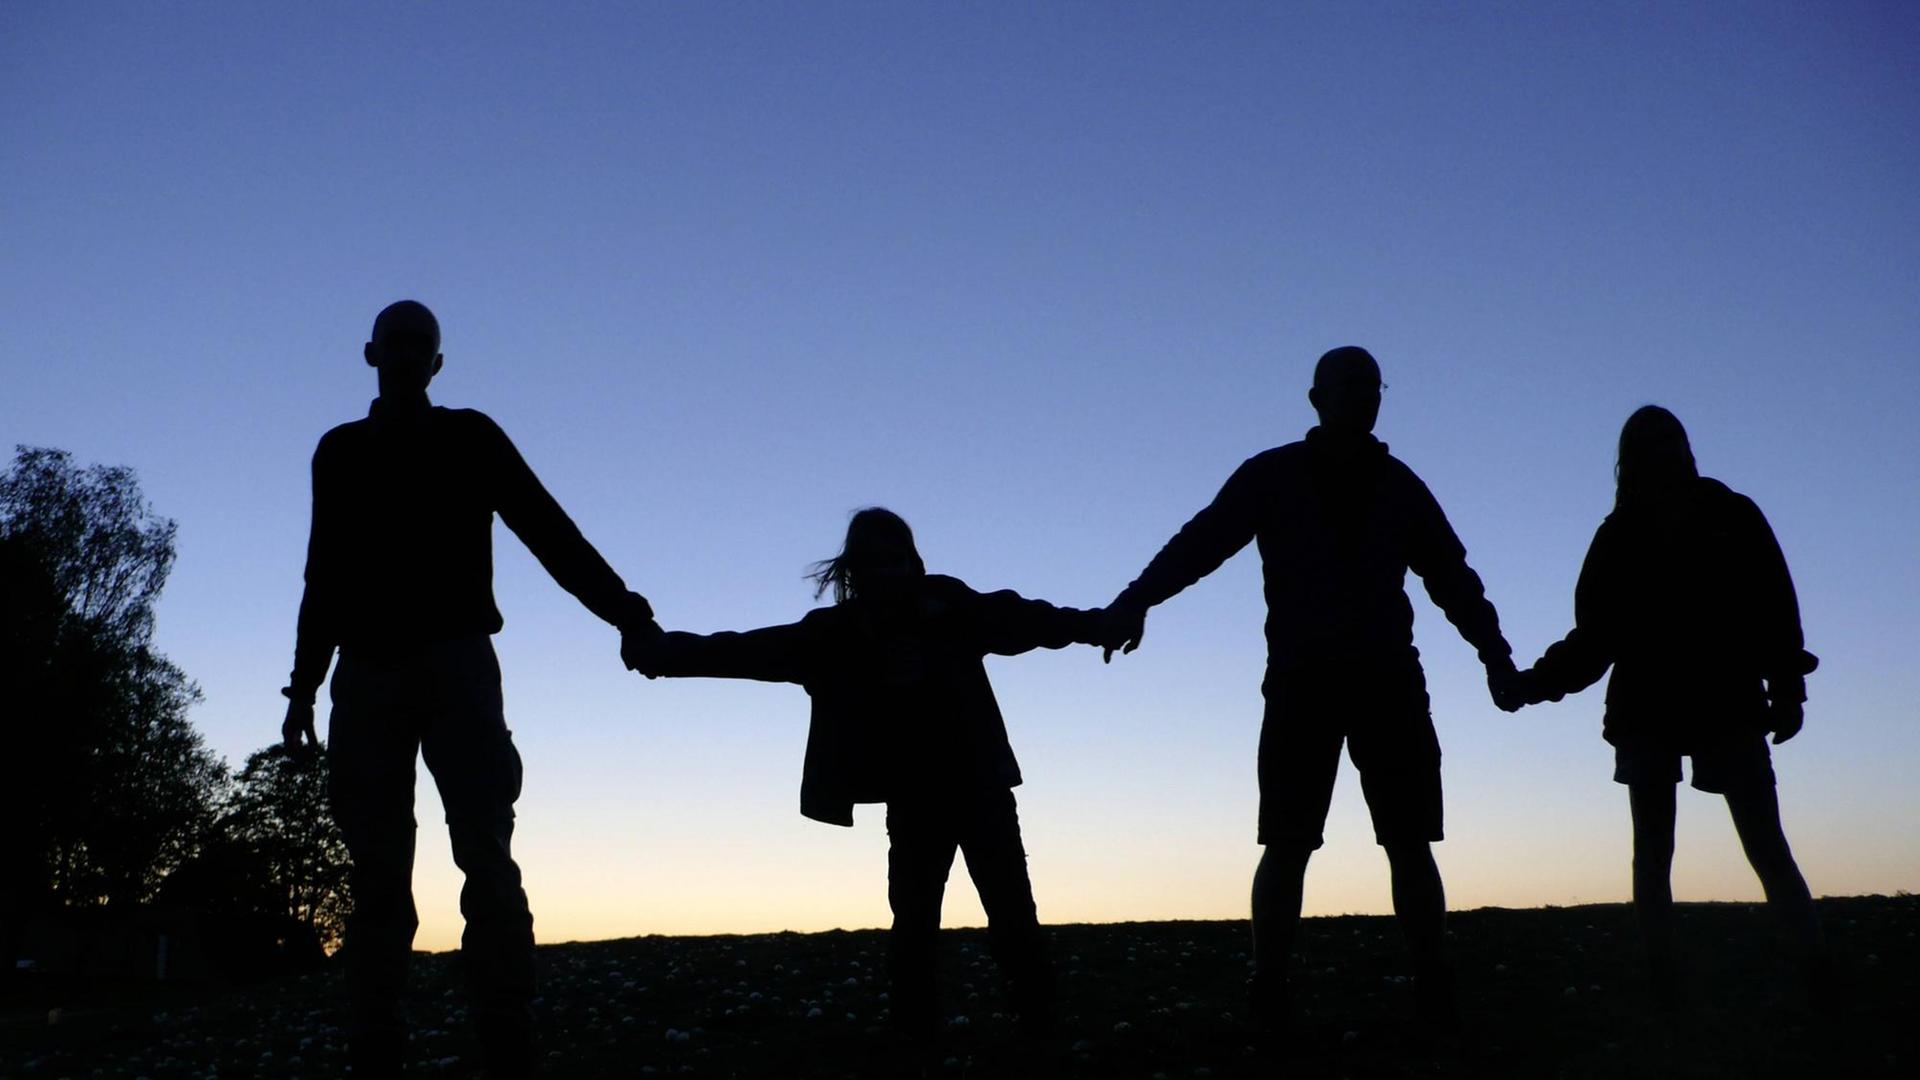 Drei Erwachsene und ein Kind halten sich die Hände, sie sind als Schattenriss vor dem dämmernden Himmel zu sehen. (Symbolbild gesellschaftlicher Zusammenhalt)